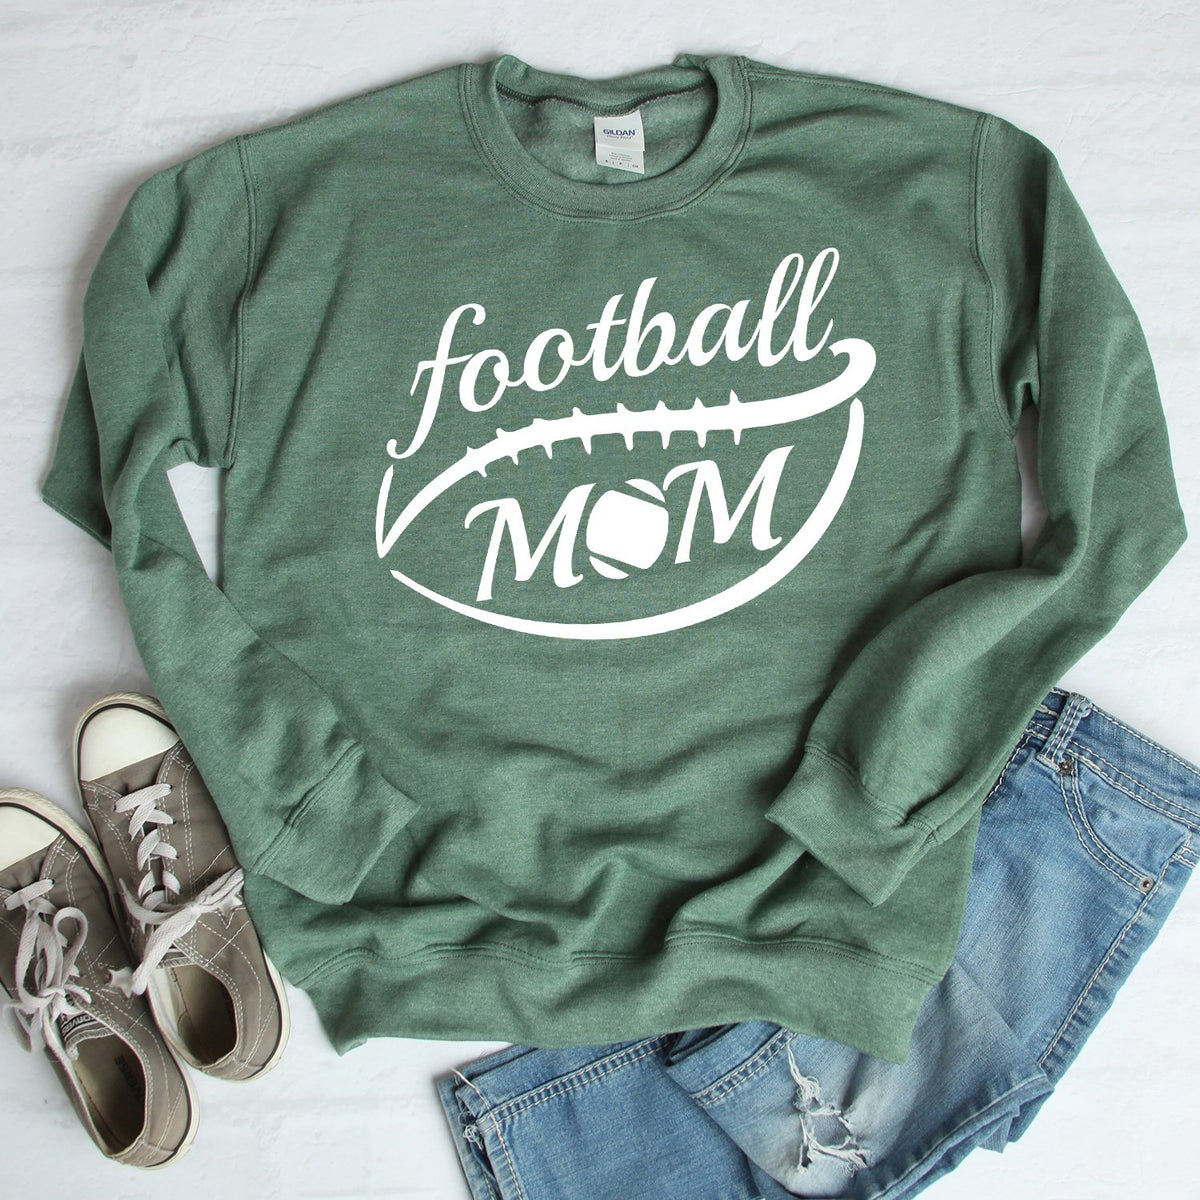 Football Mom - Long Sleeve Heavy Crewneck Sweatshirt